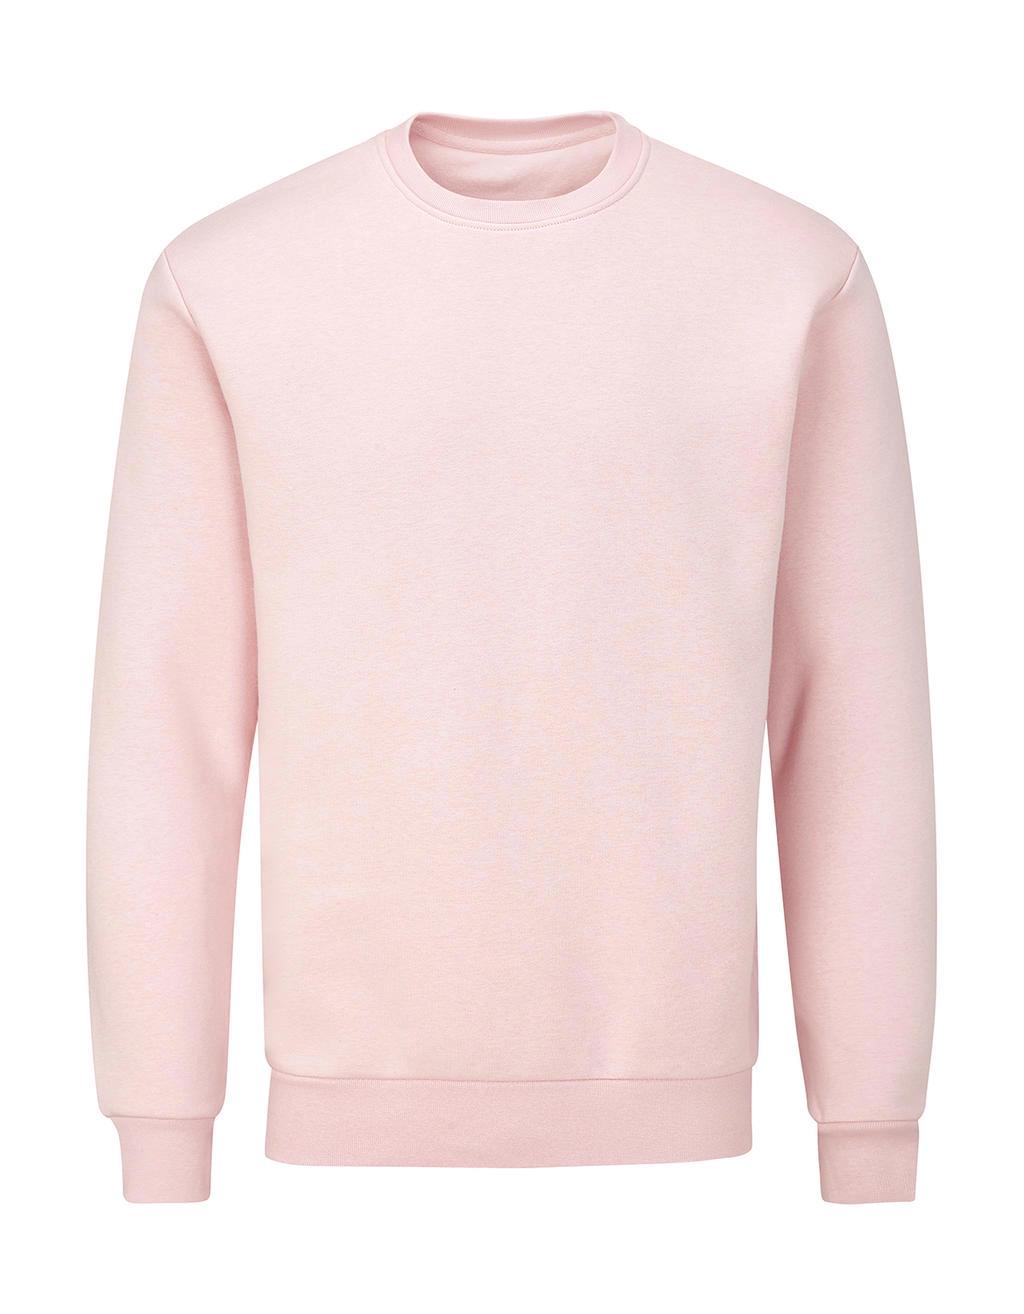 Essential Sweatshirt zum Besticken und Bedrucken in der Farbe Soft Pink mit Ihren Logo, Schriftzug oder Motiv.